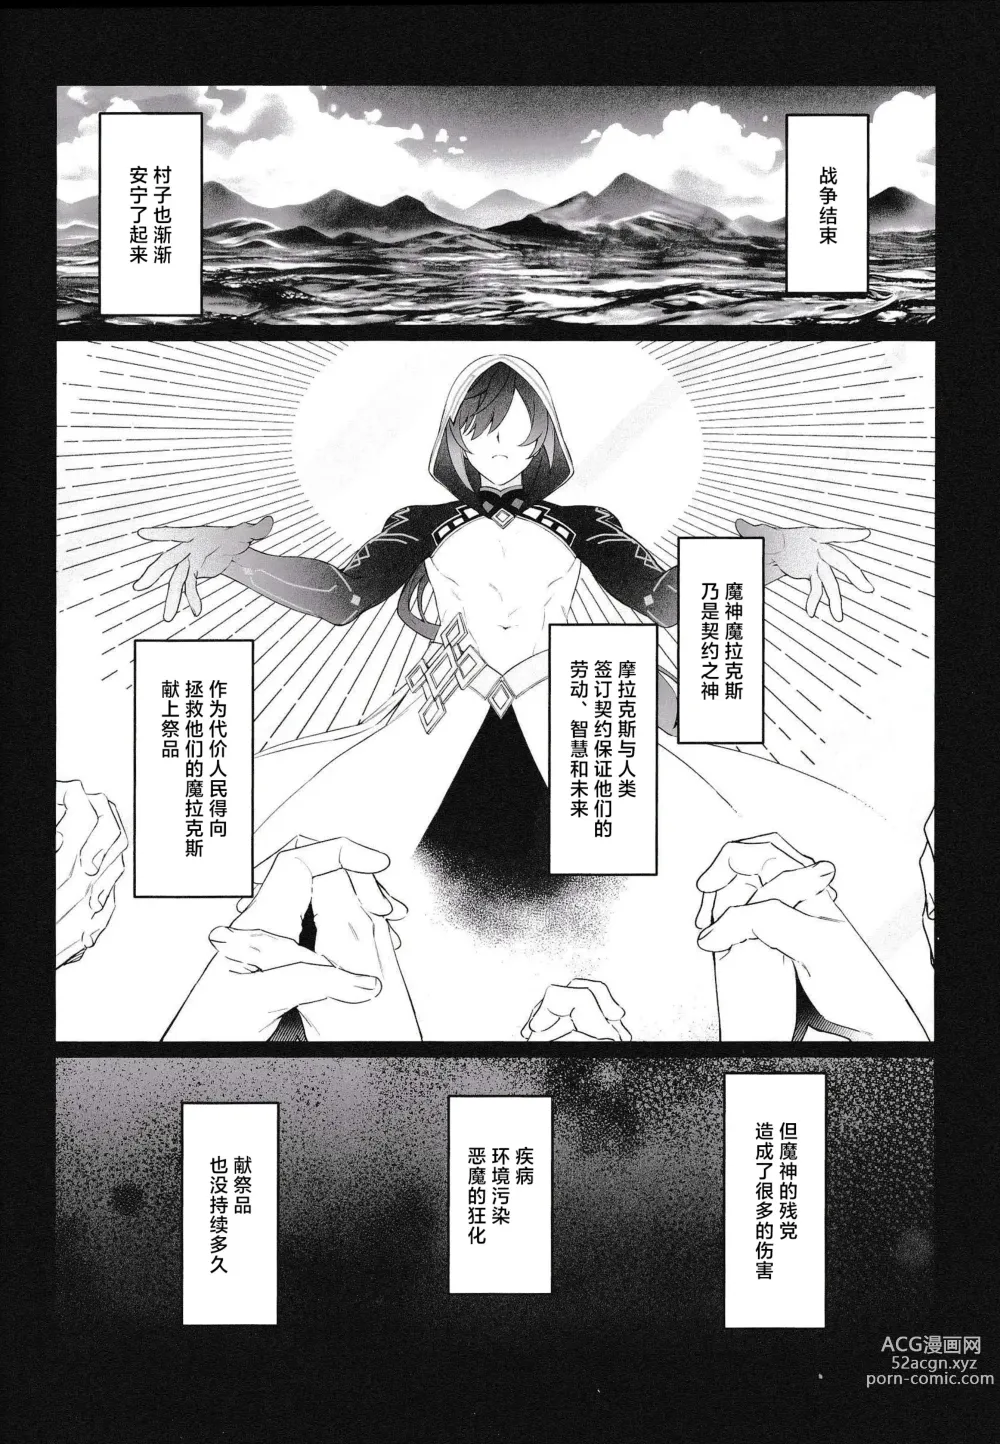 Page 6 of doujinshi Mugen no Sentaku